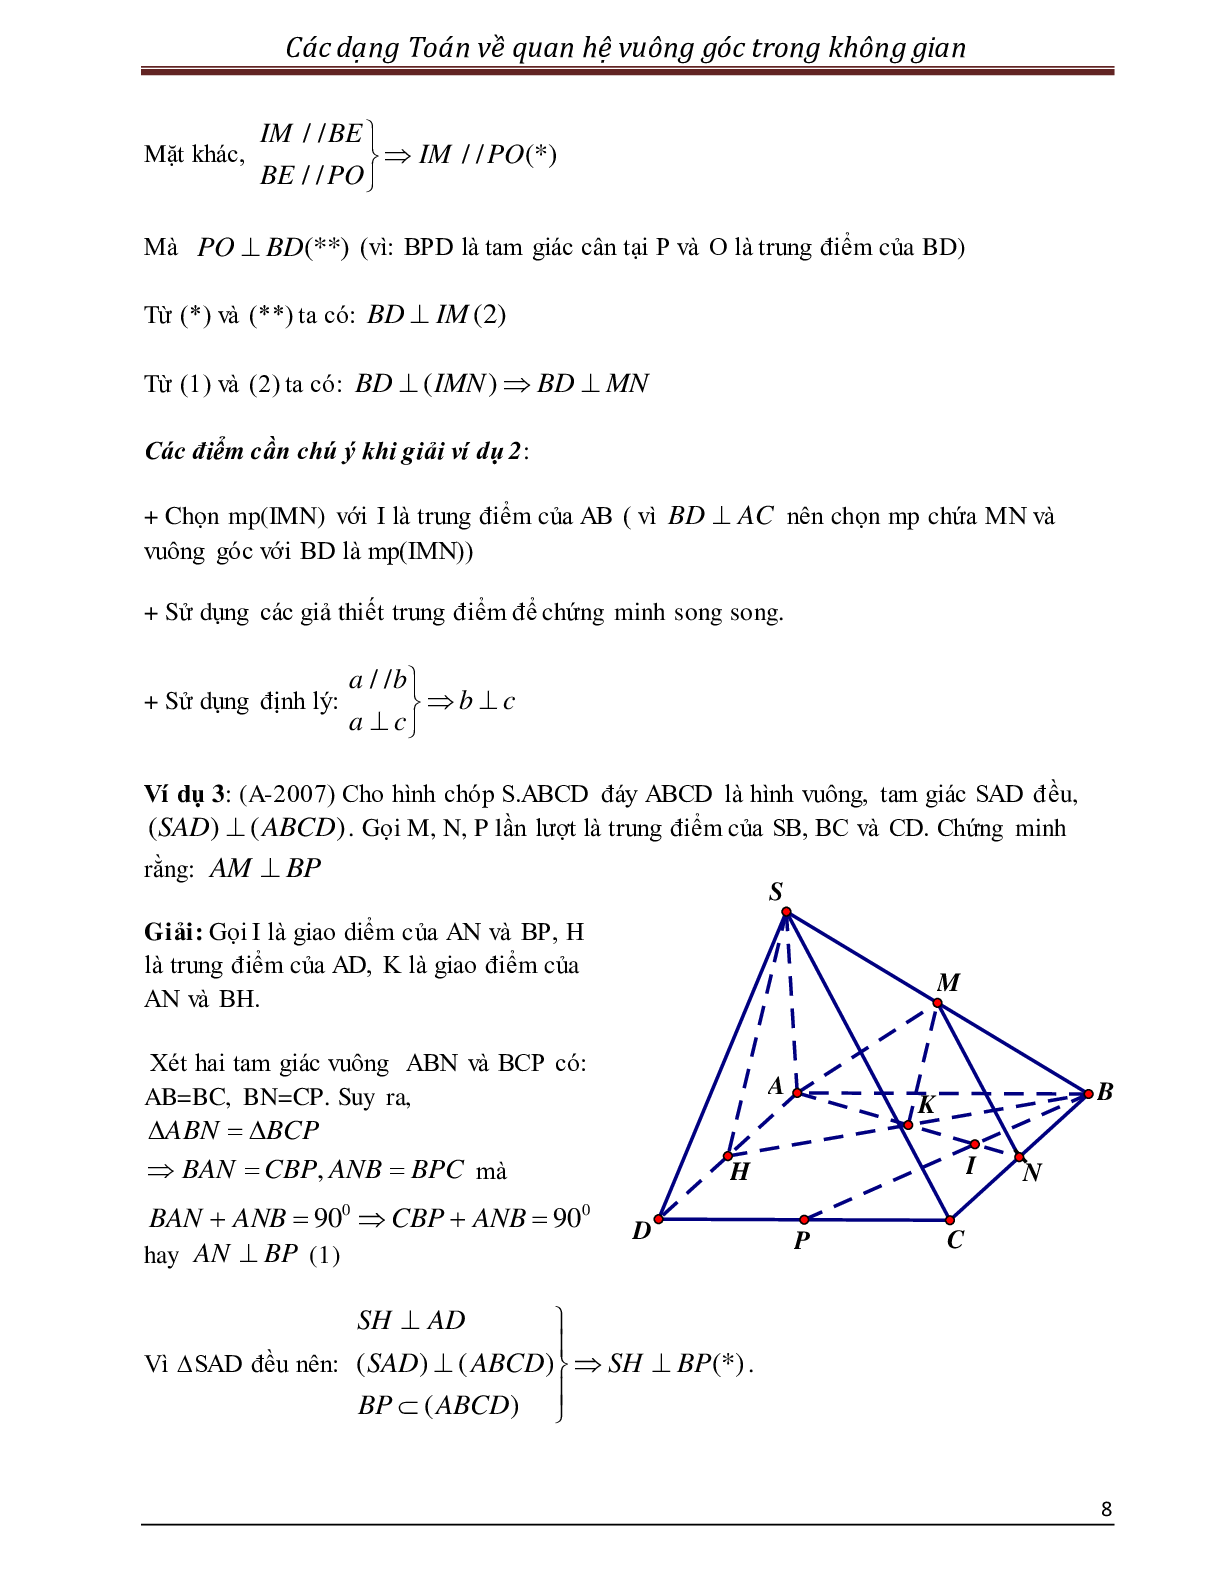 Các dạng toán quan hệ vuông góc trong không gian (trang 8)